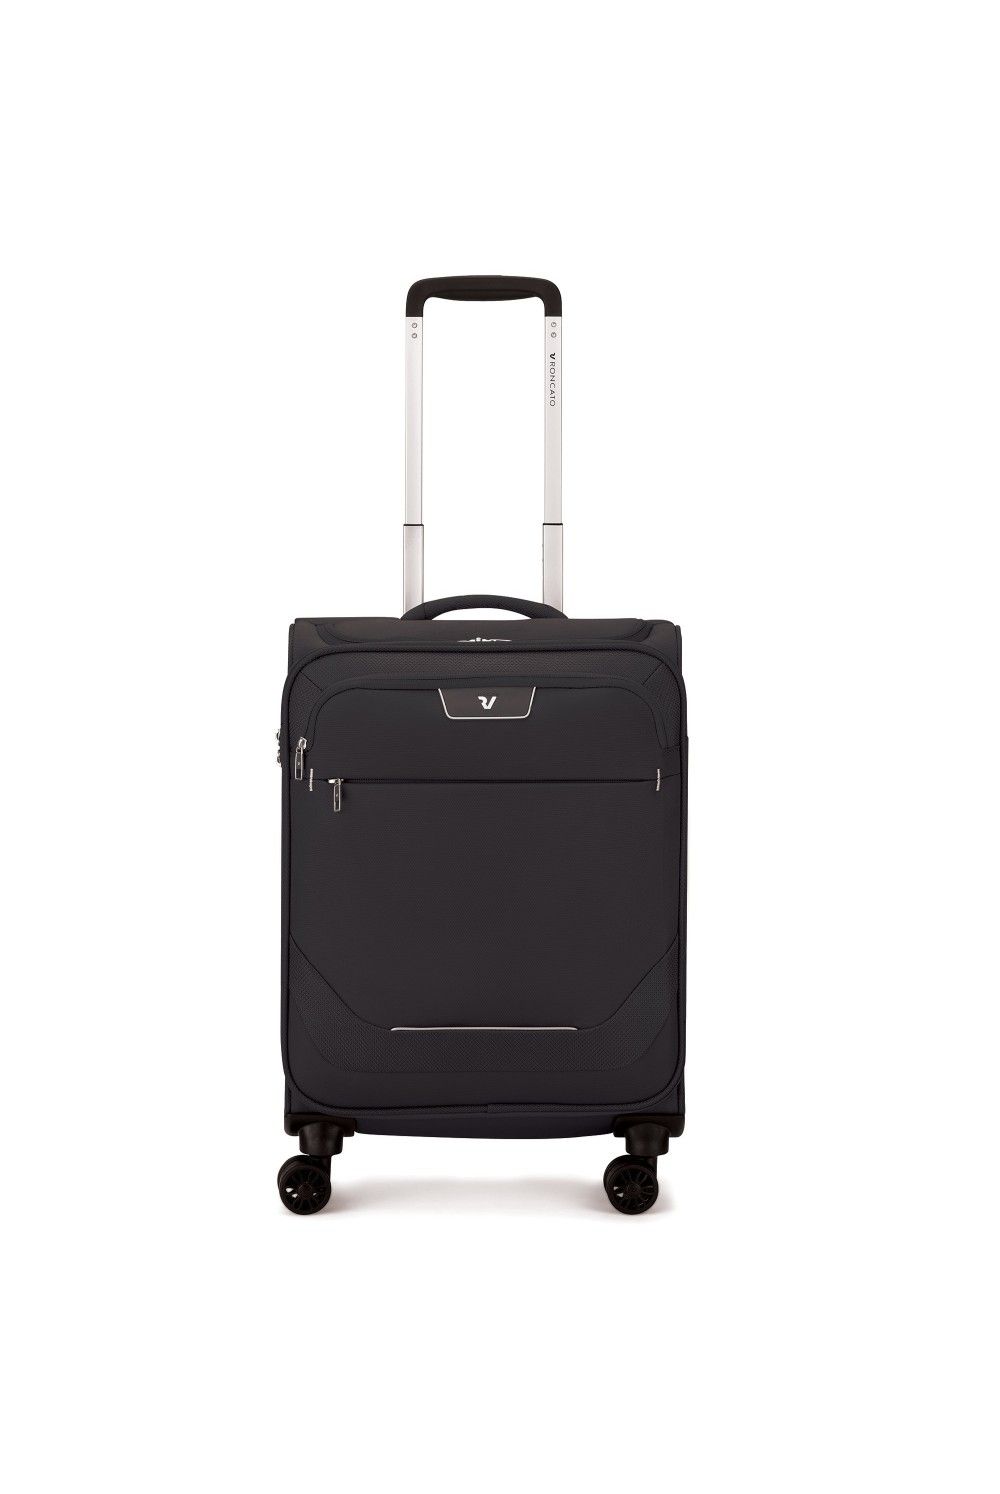 Hand luggage Roncato Joy 55cm 4 wheel